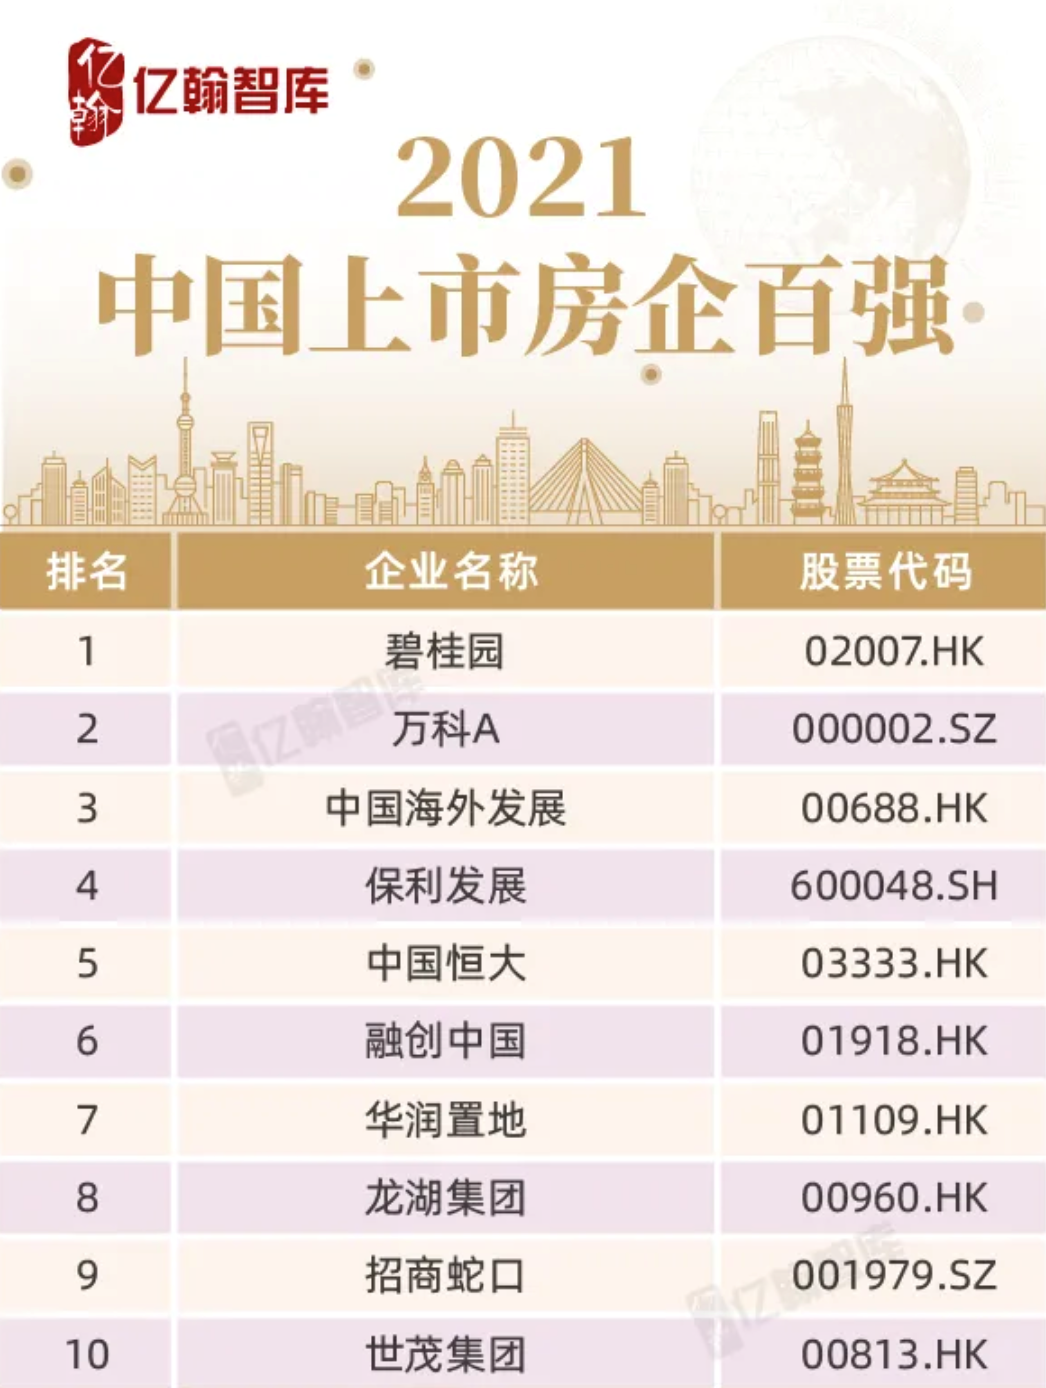 碧桂园连续第四年位列“中国上市房企百强”首位